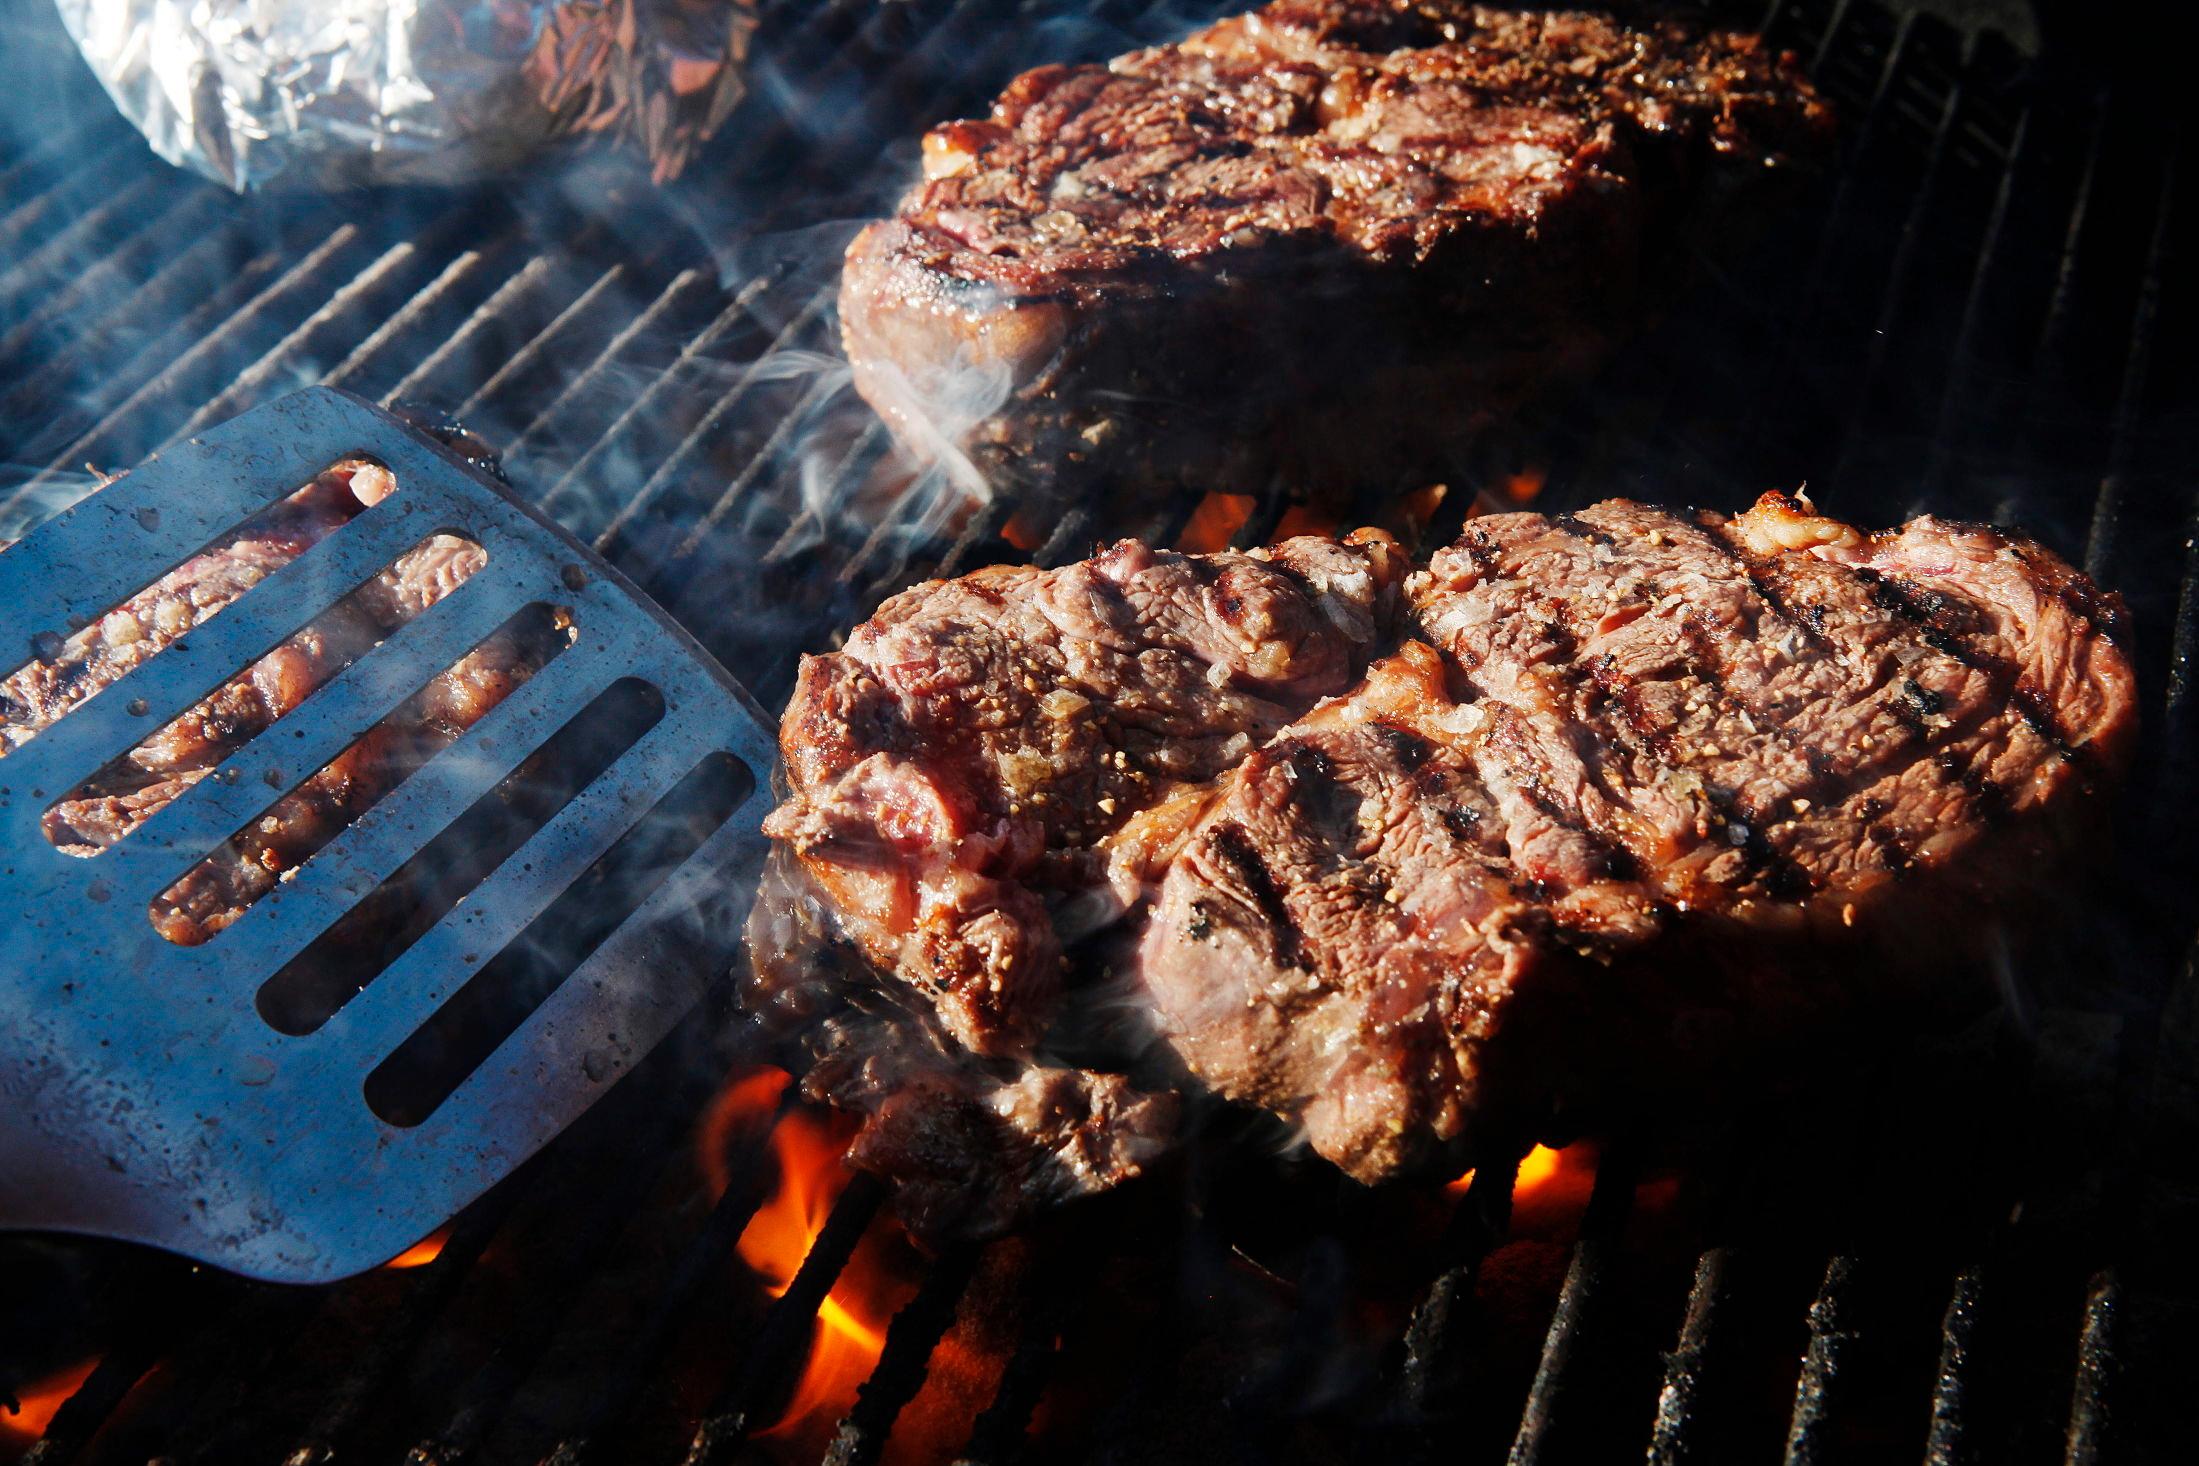 SAFTIG BIFF: Entrecote eller andre kjøttstykker blir jevnere stekt om du snur de ofte. Foto: Magnar Kirknes / VG